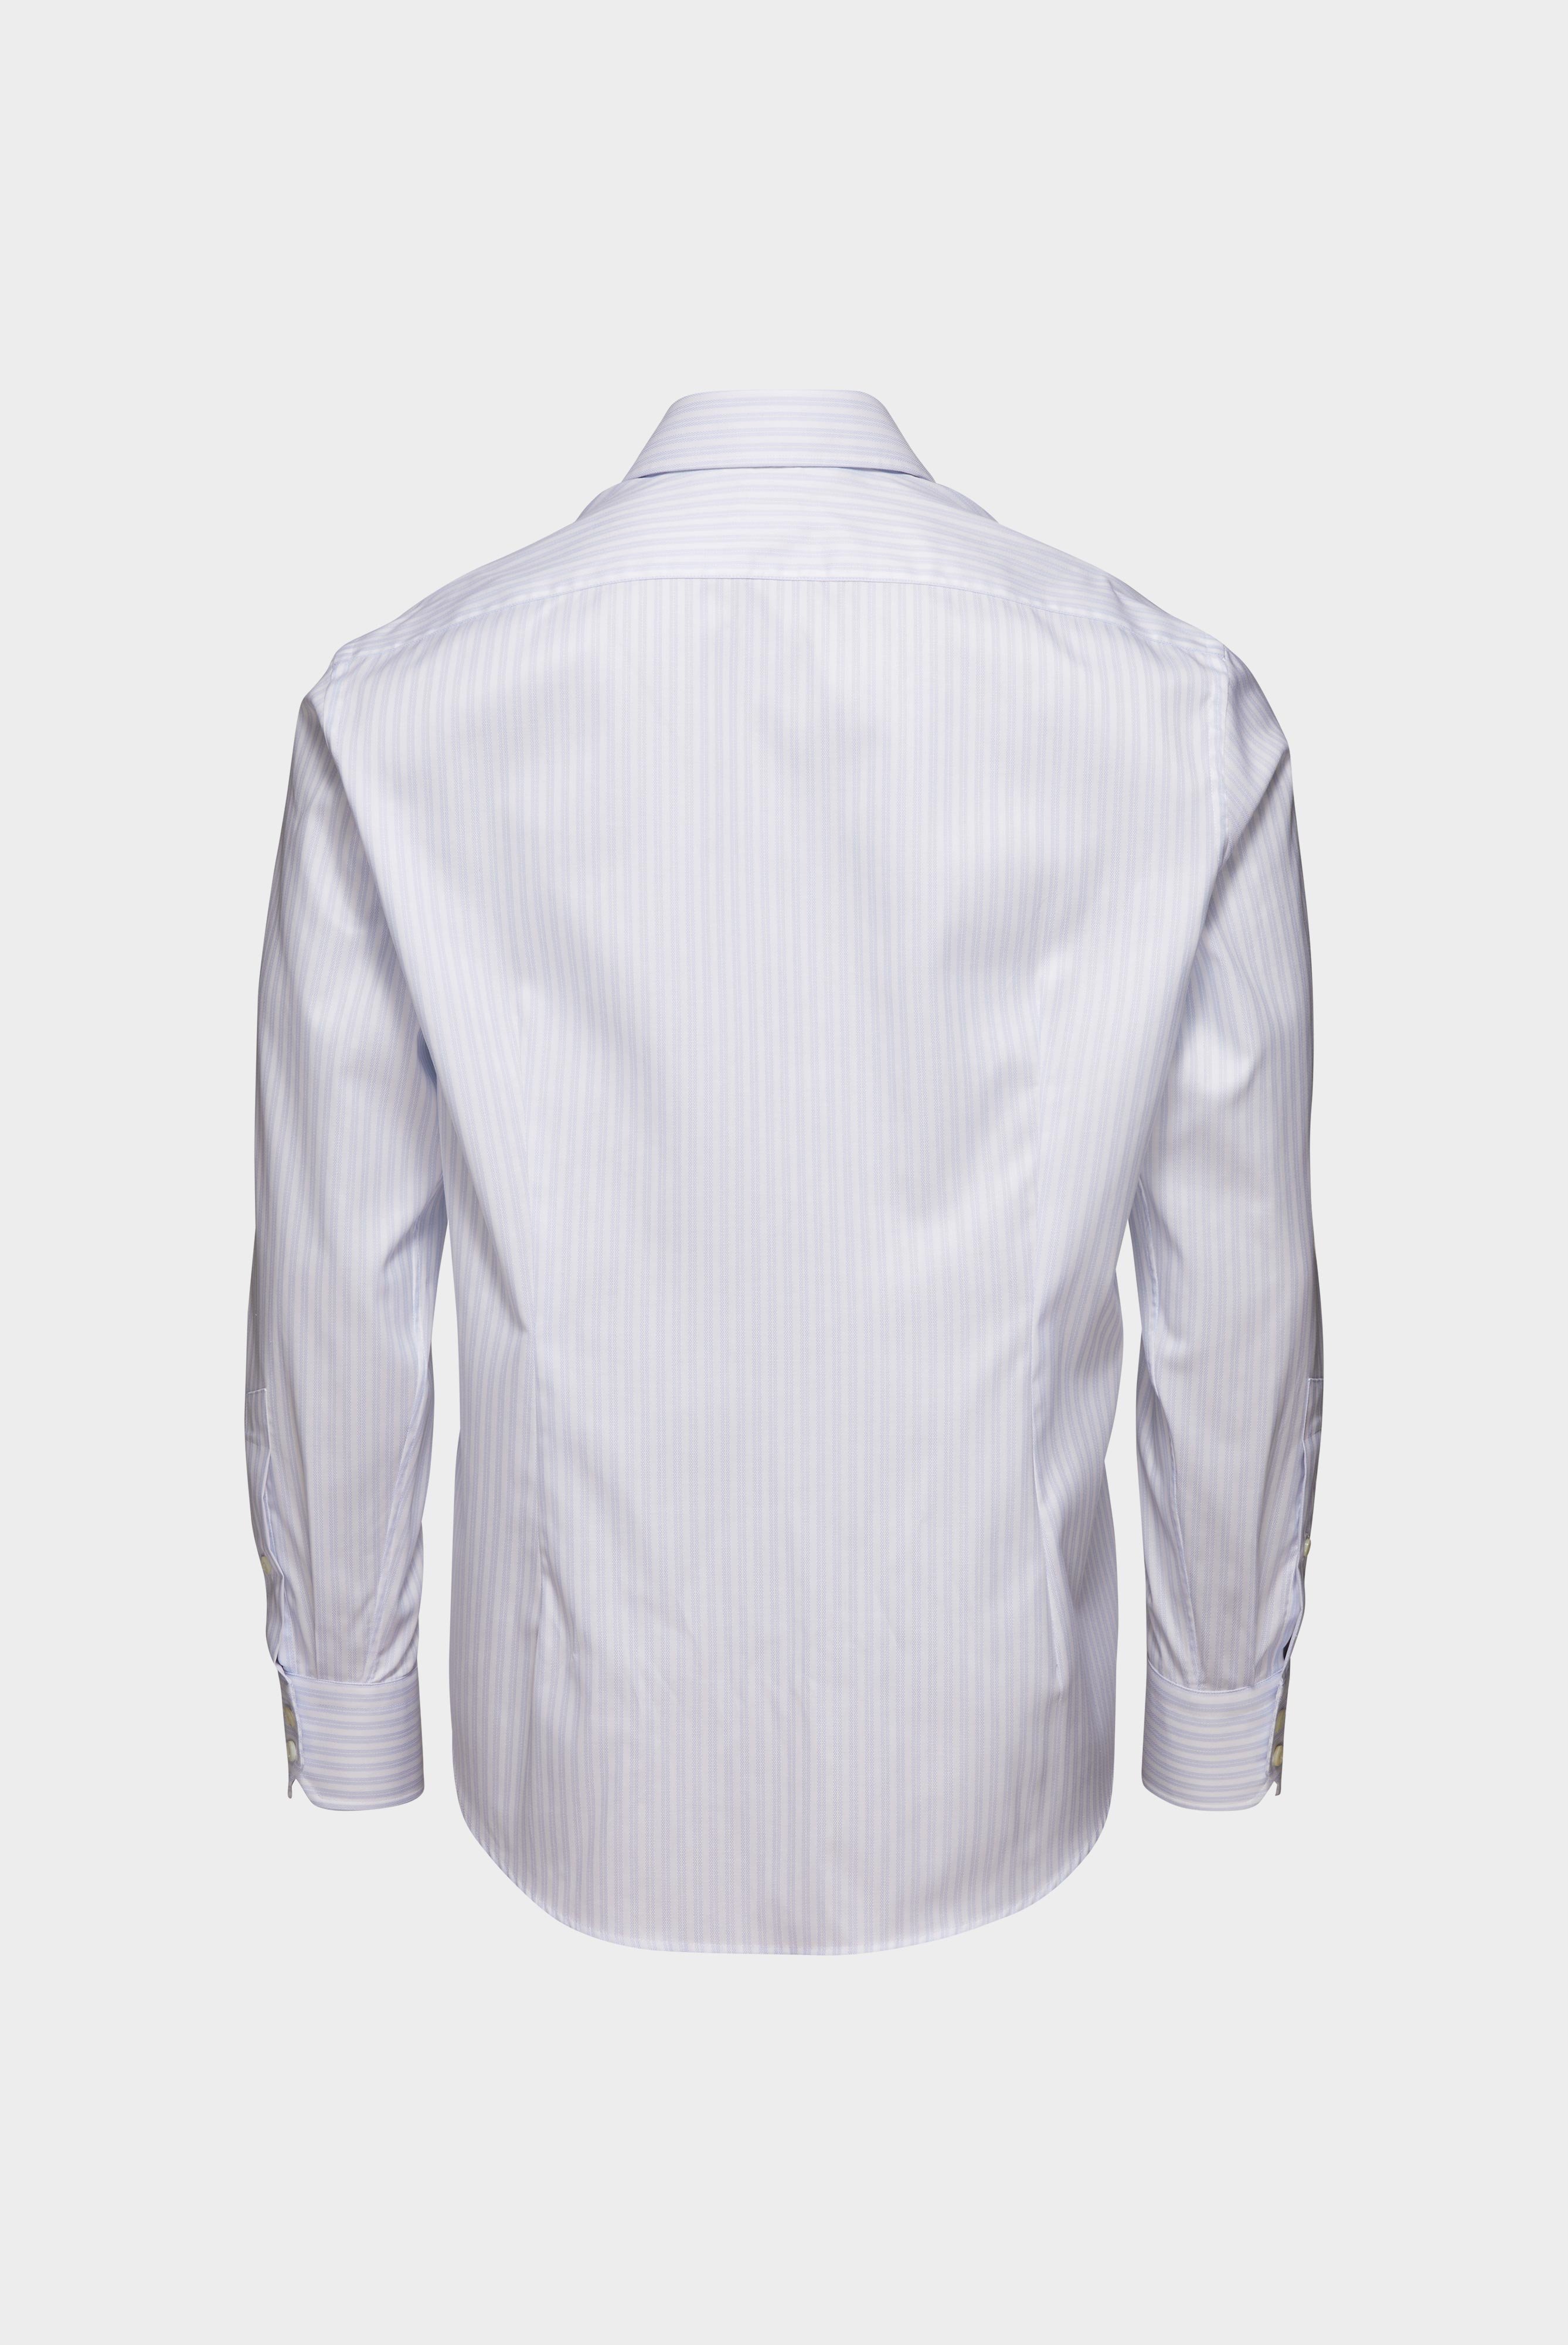 Bügelleichte Hemden+Bügelfreies Hemd mit Streifen Tailor Fit+20.2020.BQ.161106.007.43